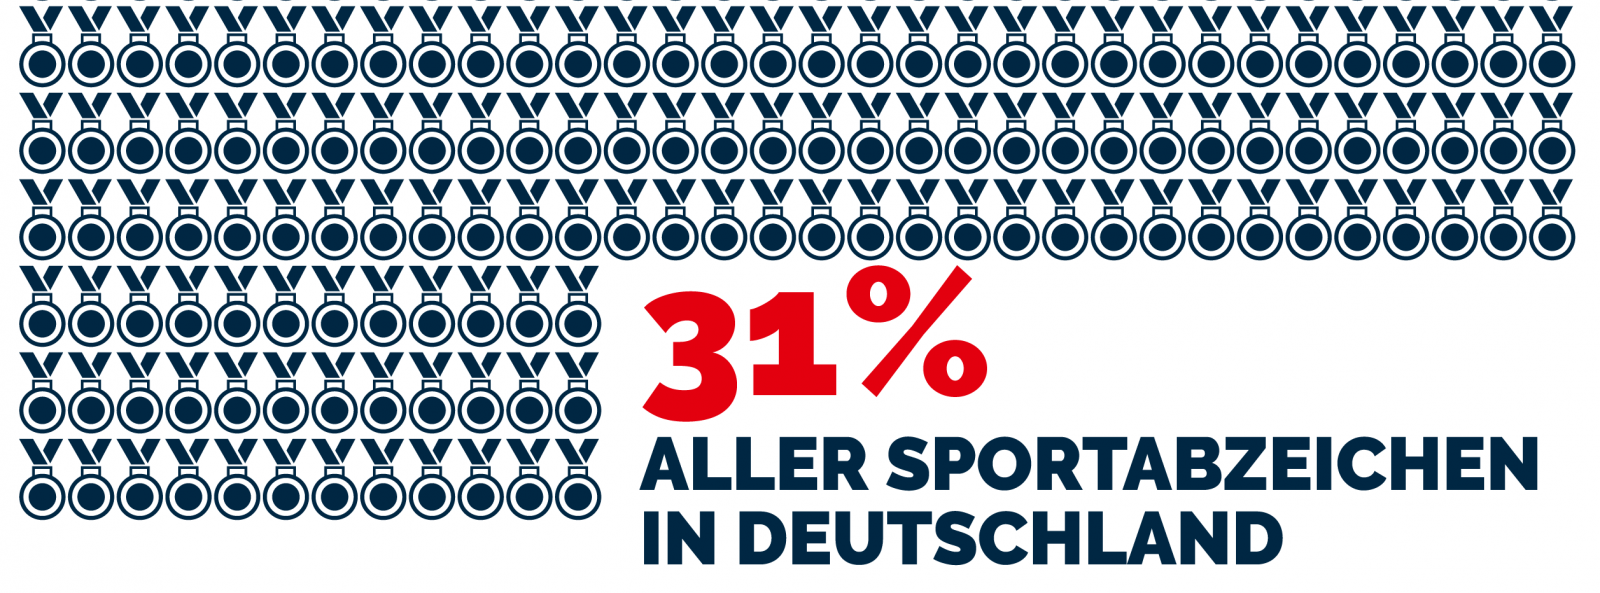 31% aller Sportabzeichen in Deutschland